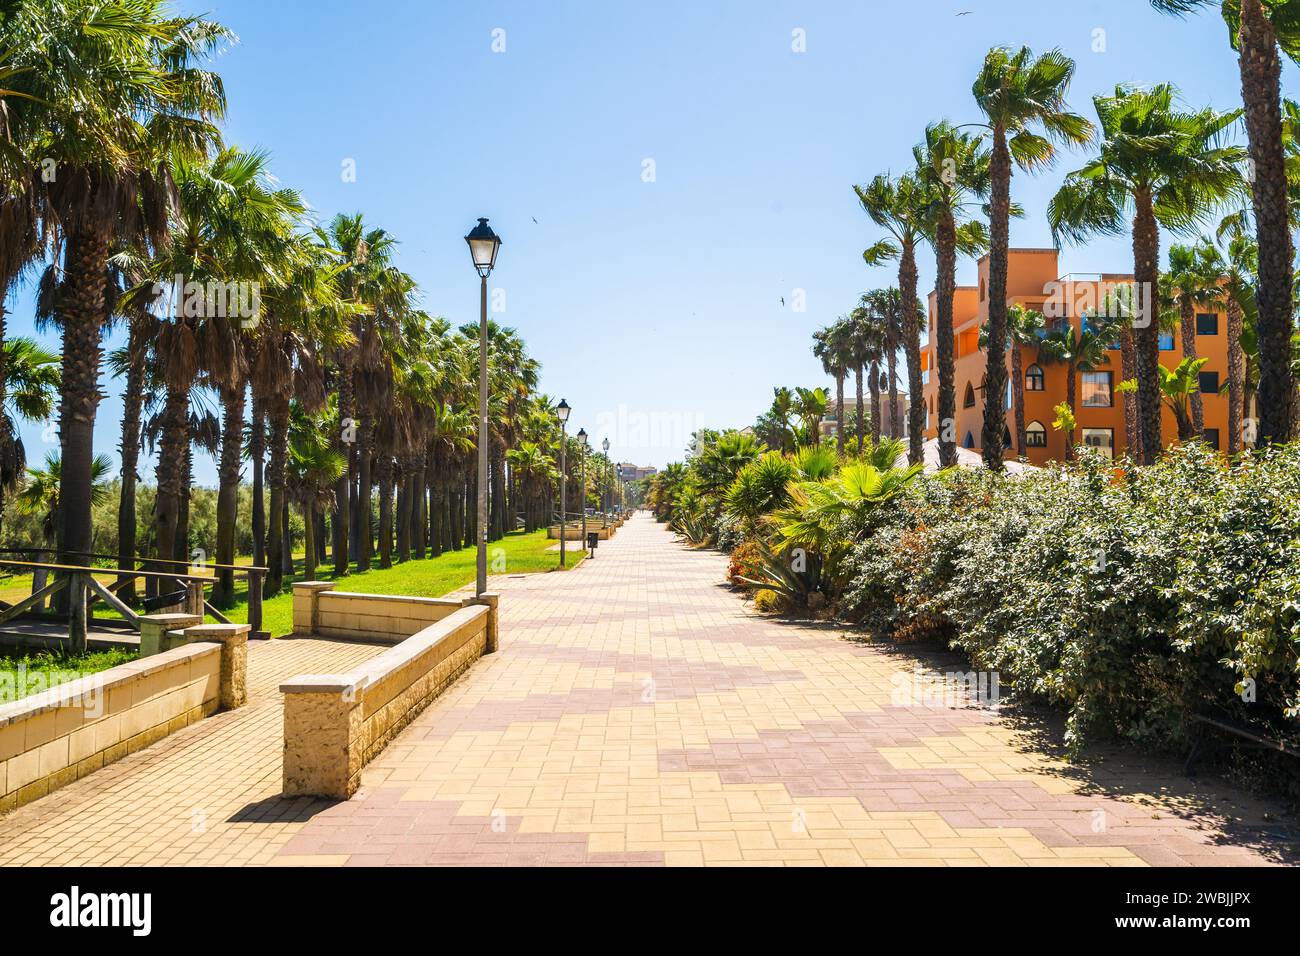 Promenade en bord de mer avec palmiers à Isla Canela, andalousie, Espagne Banque D'Images